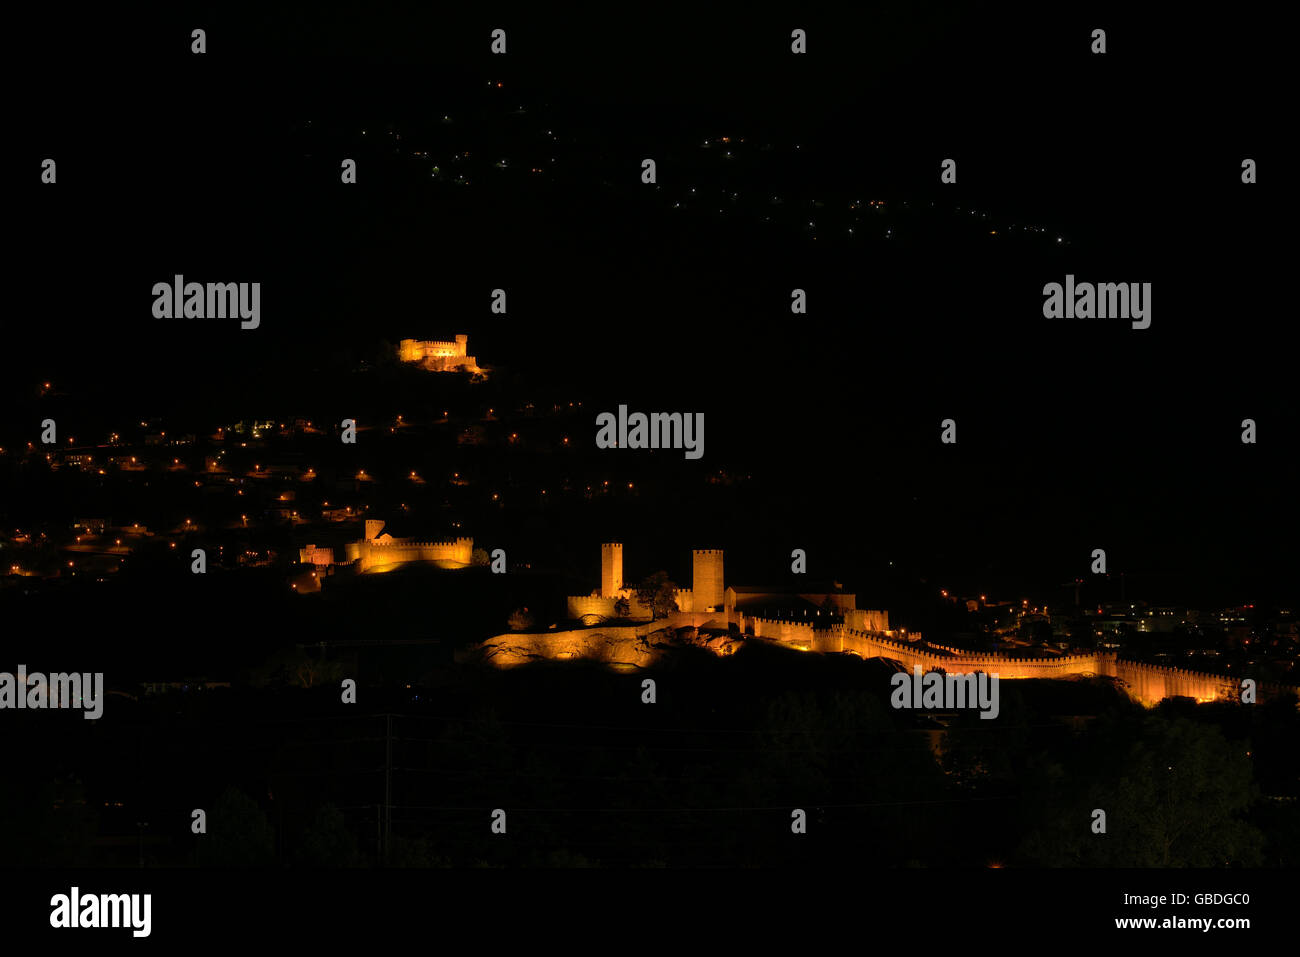 Les trois châteaux de Bellinzona (Castelgrande, Montebello, Sasso Corbaro) la nuit.Canton du Tessin, Suisse. Banque D'Images